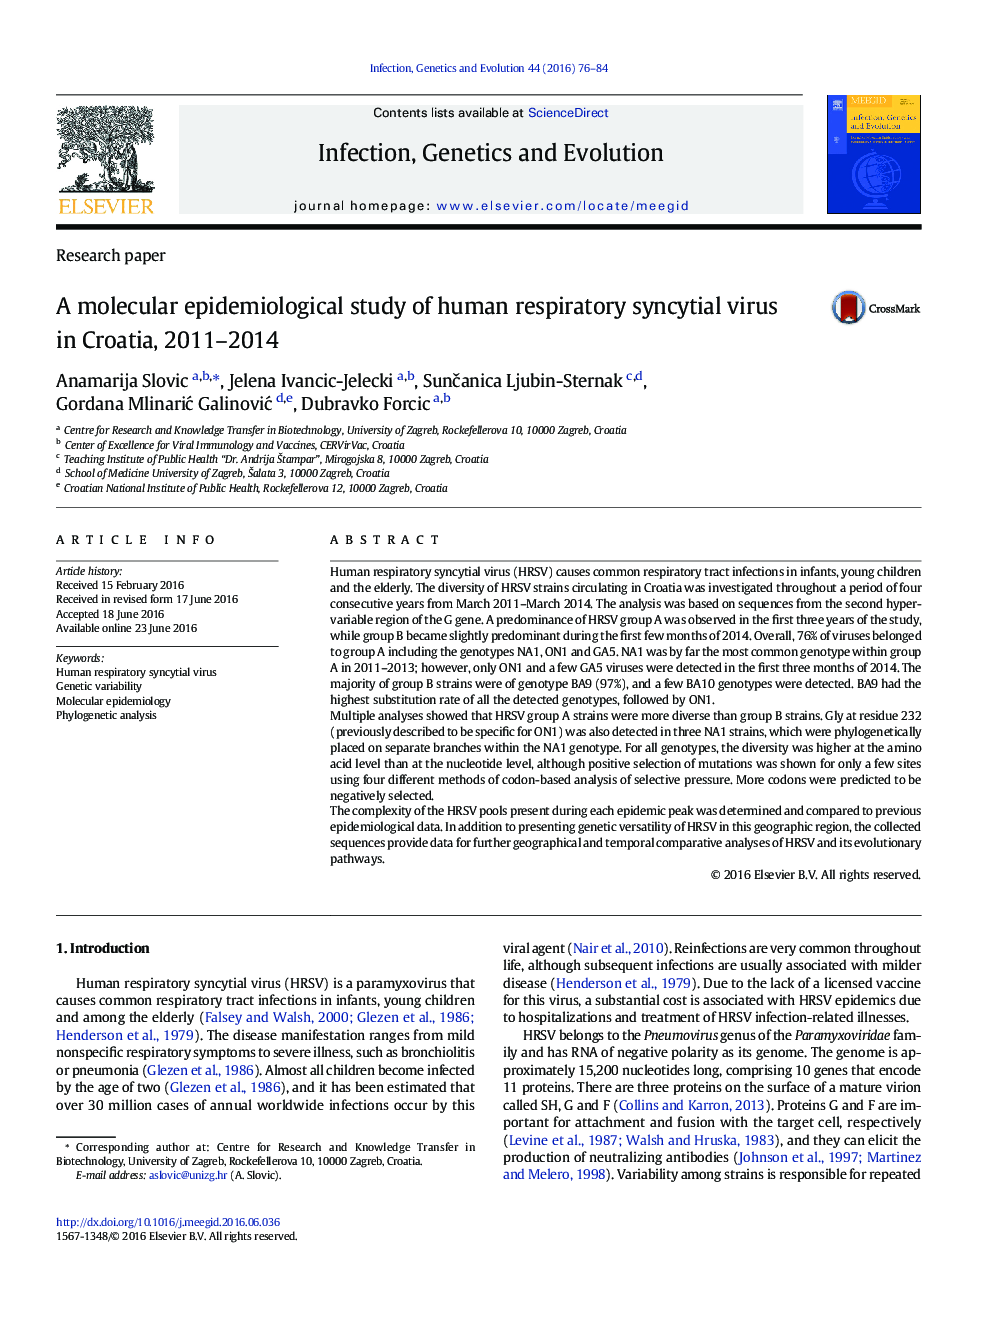 یک مطالعه اپیدمیولوژیک مولکولی ویروس سونسیتیال تنفسی انسان در کرواسی 2011-2014 